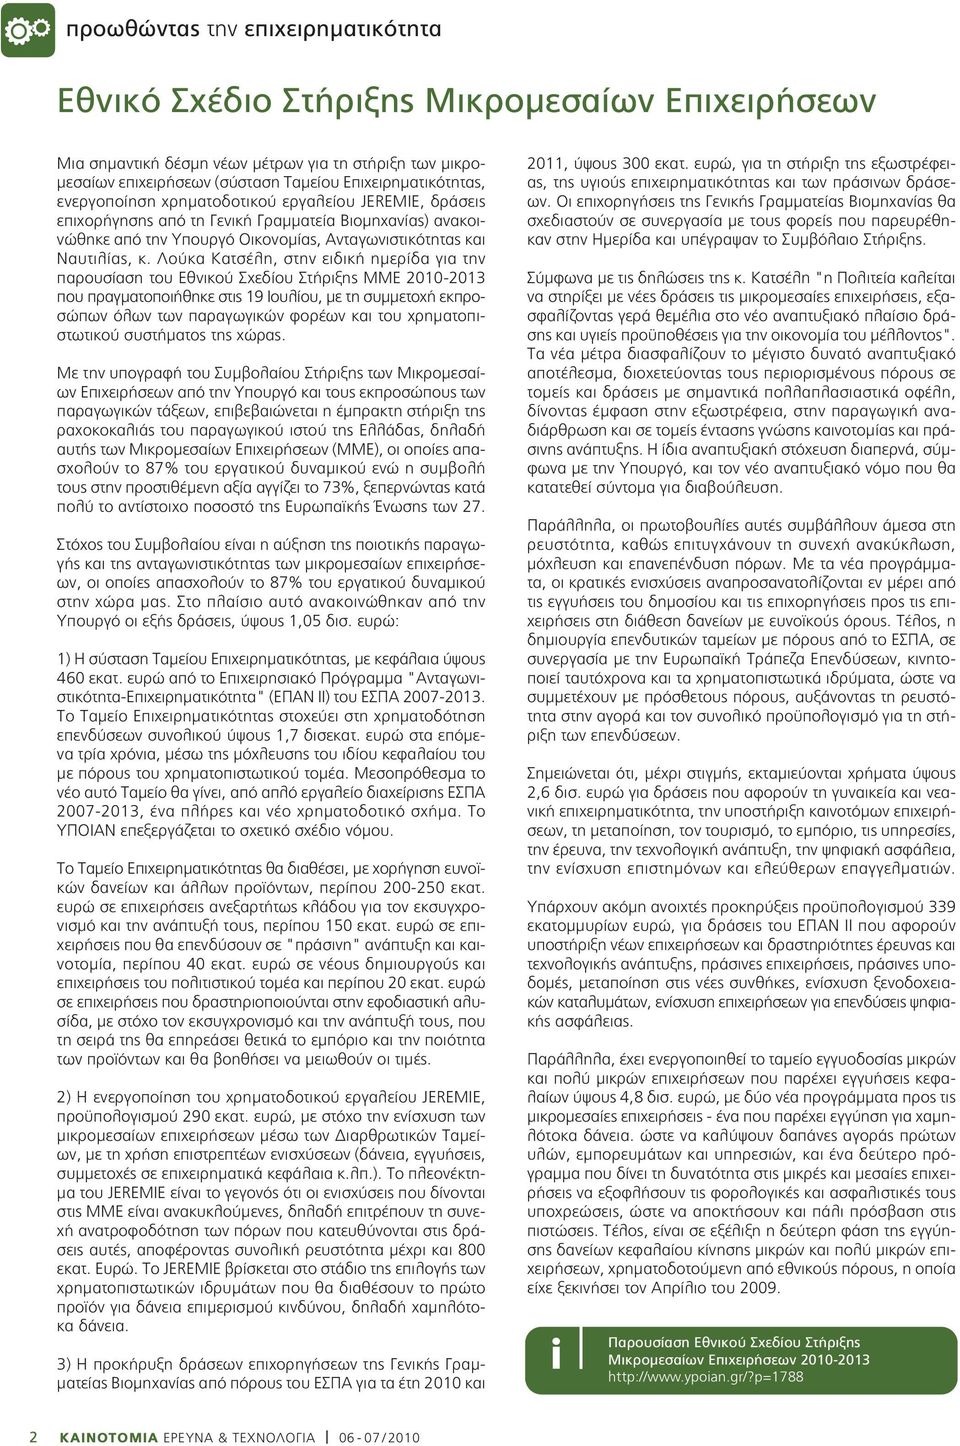 Λούκα Κατσέλη, στην ειδική ημερίδα για την παρουσίαση του Εθνικού Σχεδίου Στήριξης ΜΜΕ 2010-2013 που πραγματοποιήθηκε στις 19 Ιουλίου, με τη συμμετοχή εκπροσώπων όλων των παραγωγικών φορέων και του